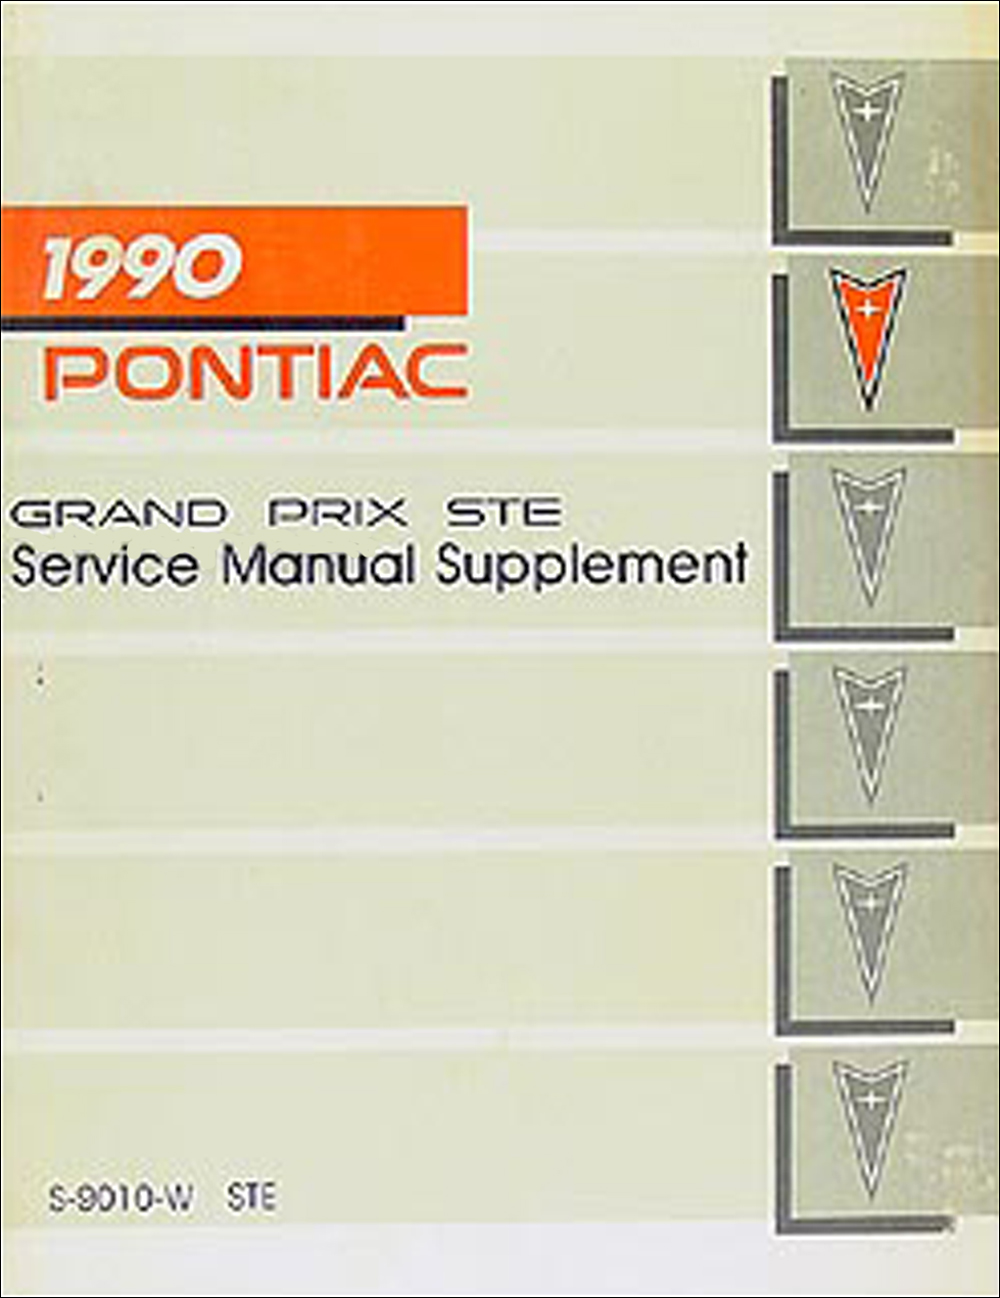 1990 Pontiac Grand Prix STE Repair Manual Original Supplement